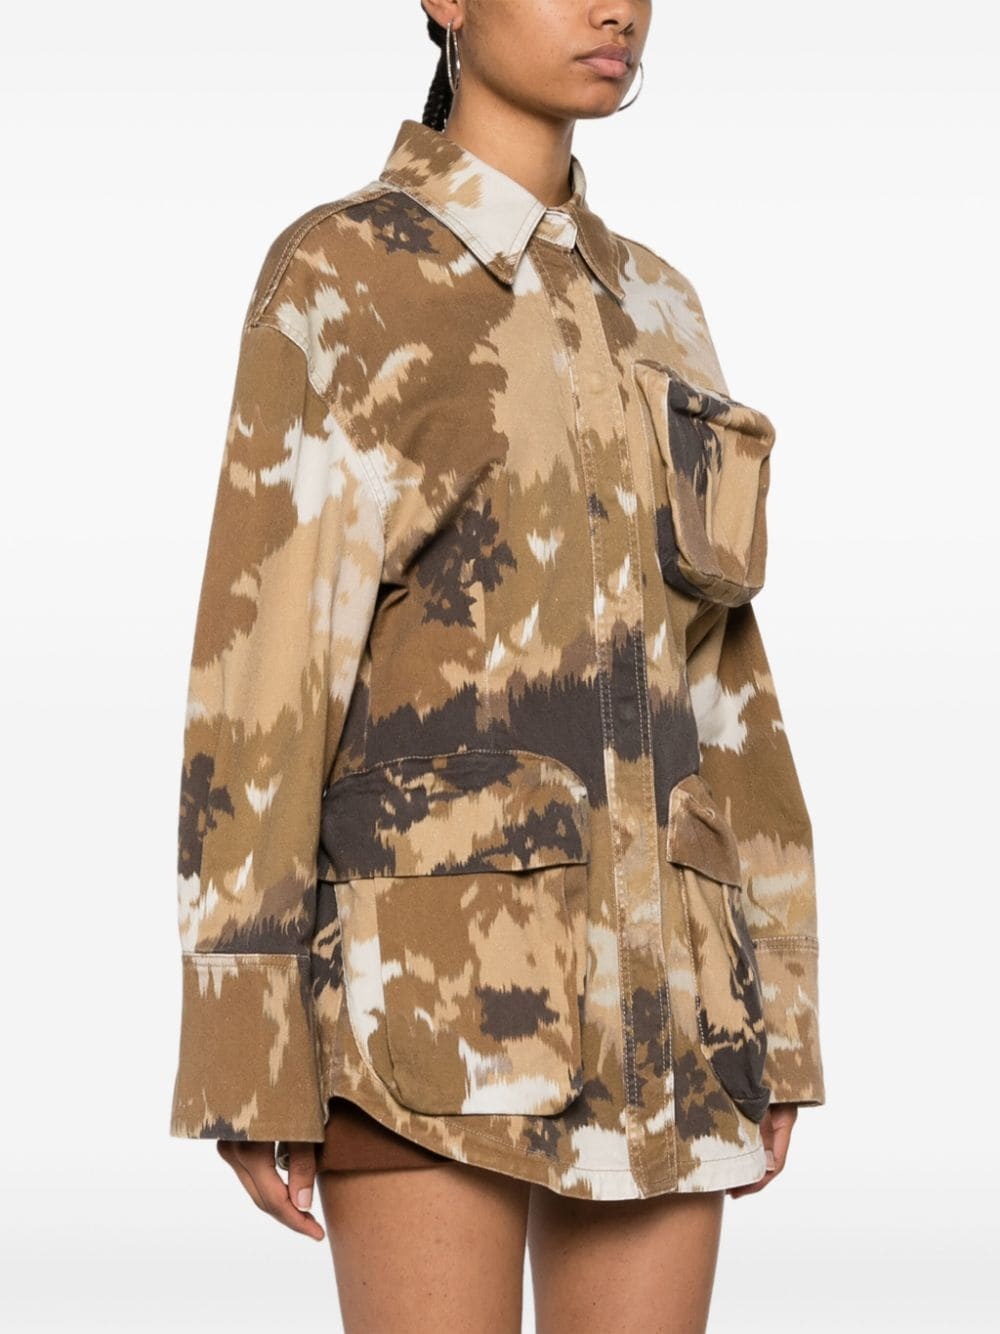 camouflage-print shirt jacket - 3